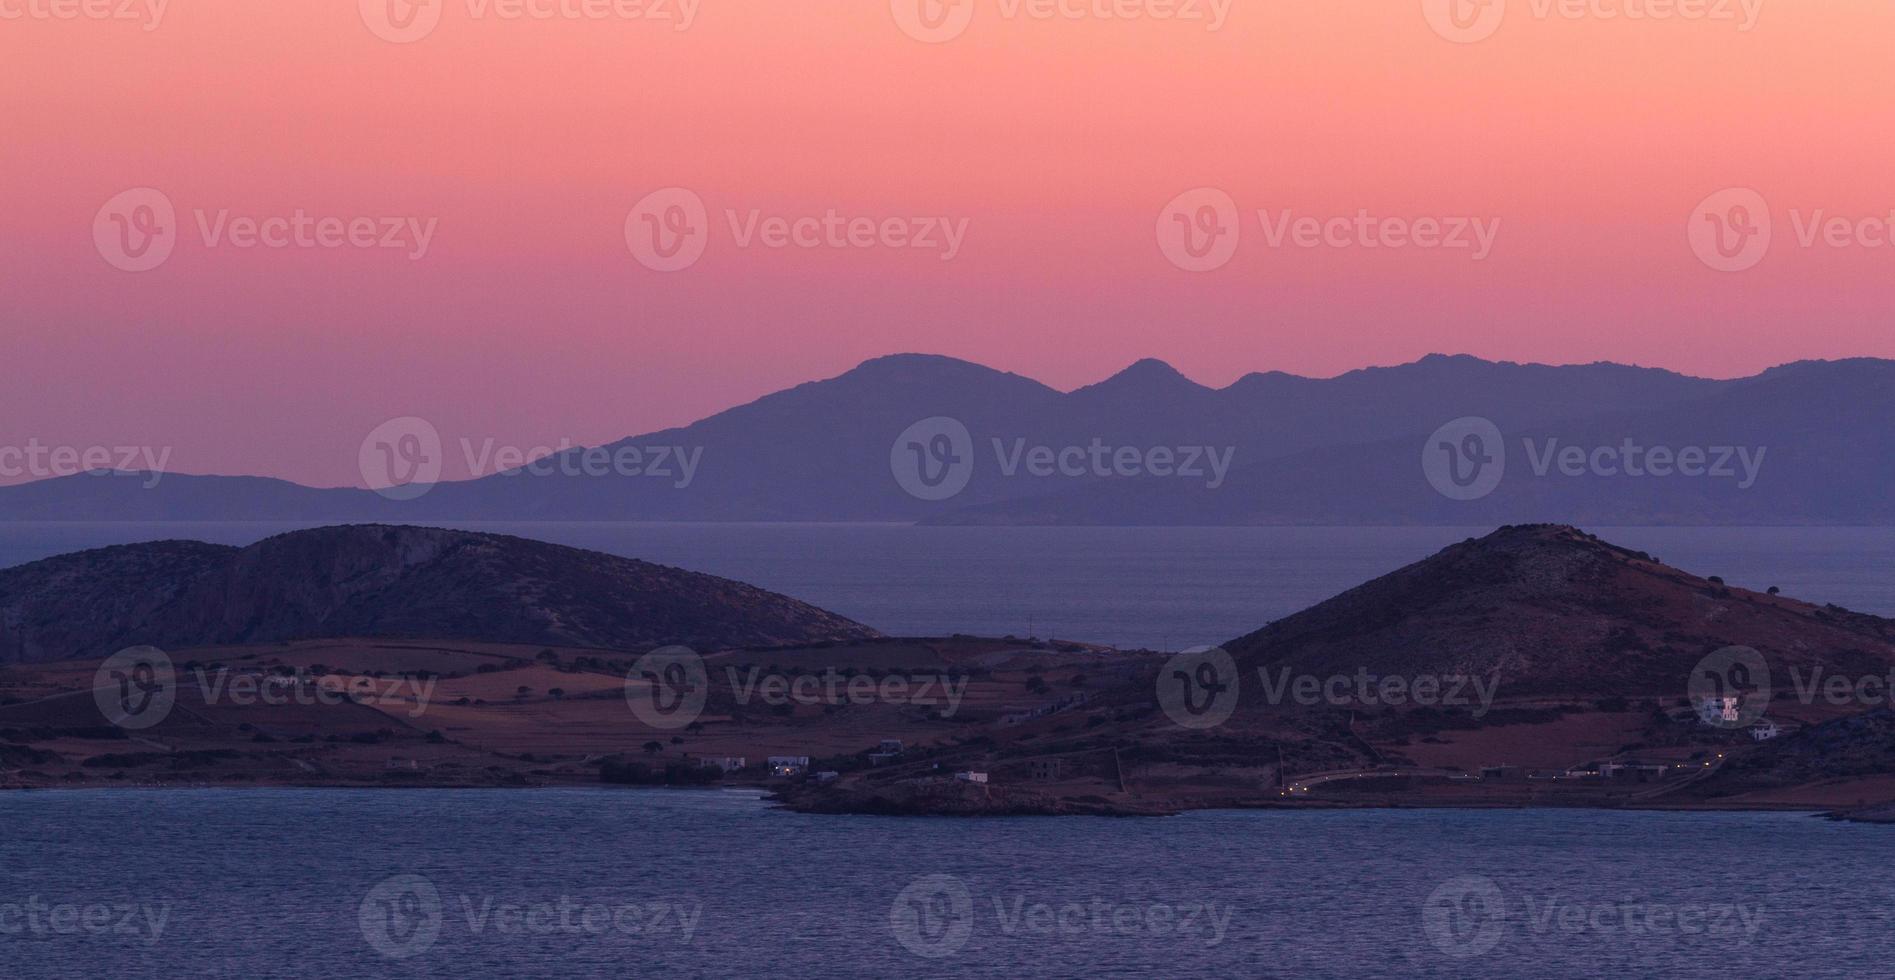 Landschaften von Mikrokykladen, Griechenland foto